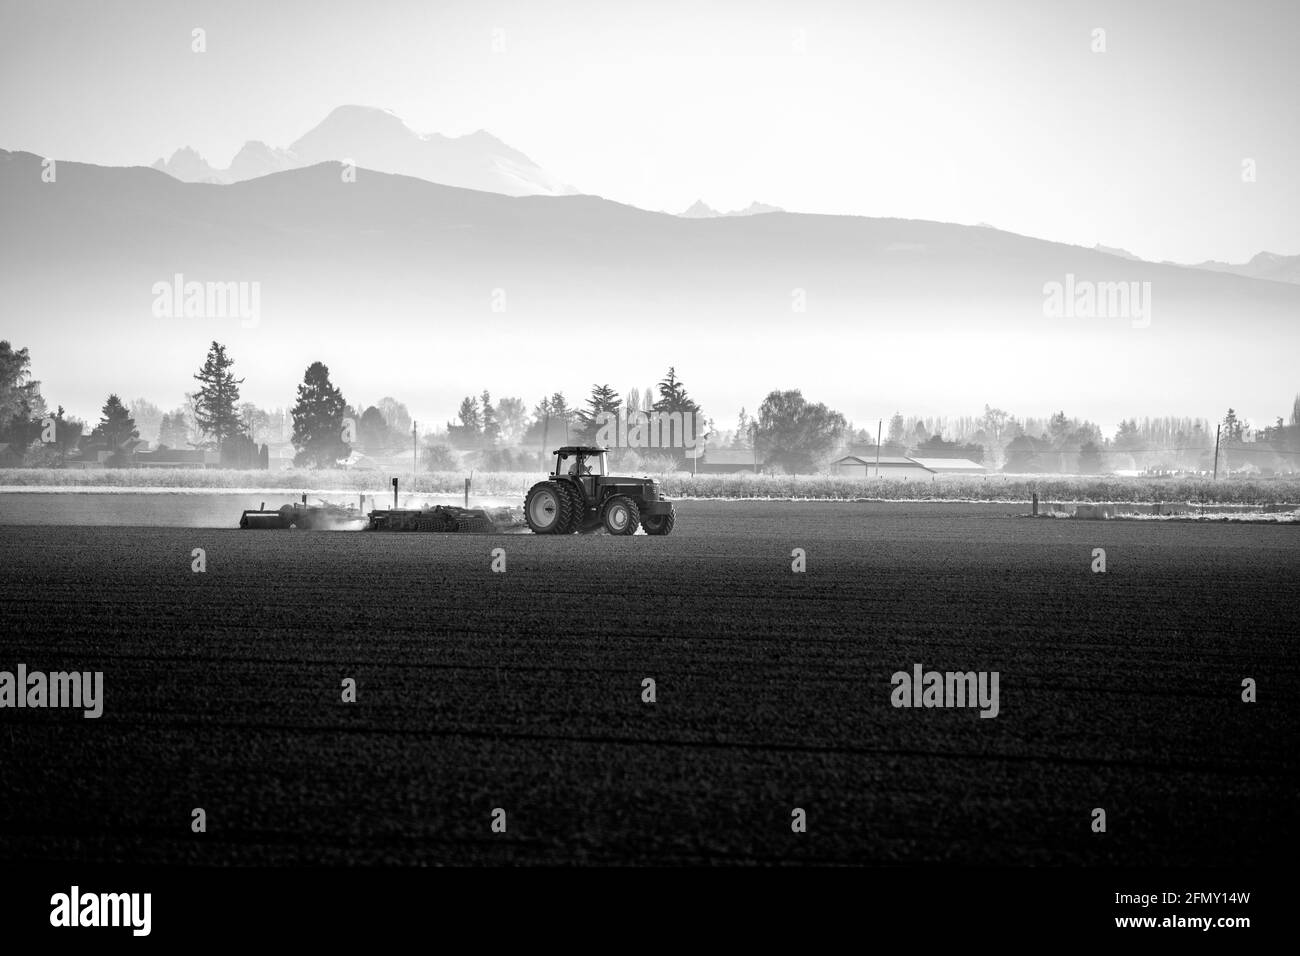 WA20192-00-BW...... WASHINGTON - trattore che aratura un campo nella valle di Skagit. Foto Stock